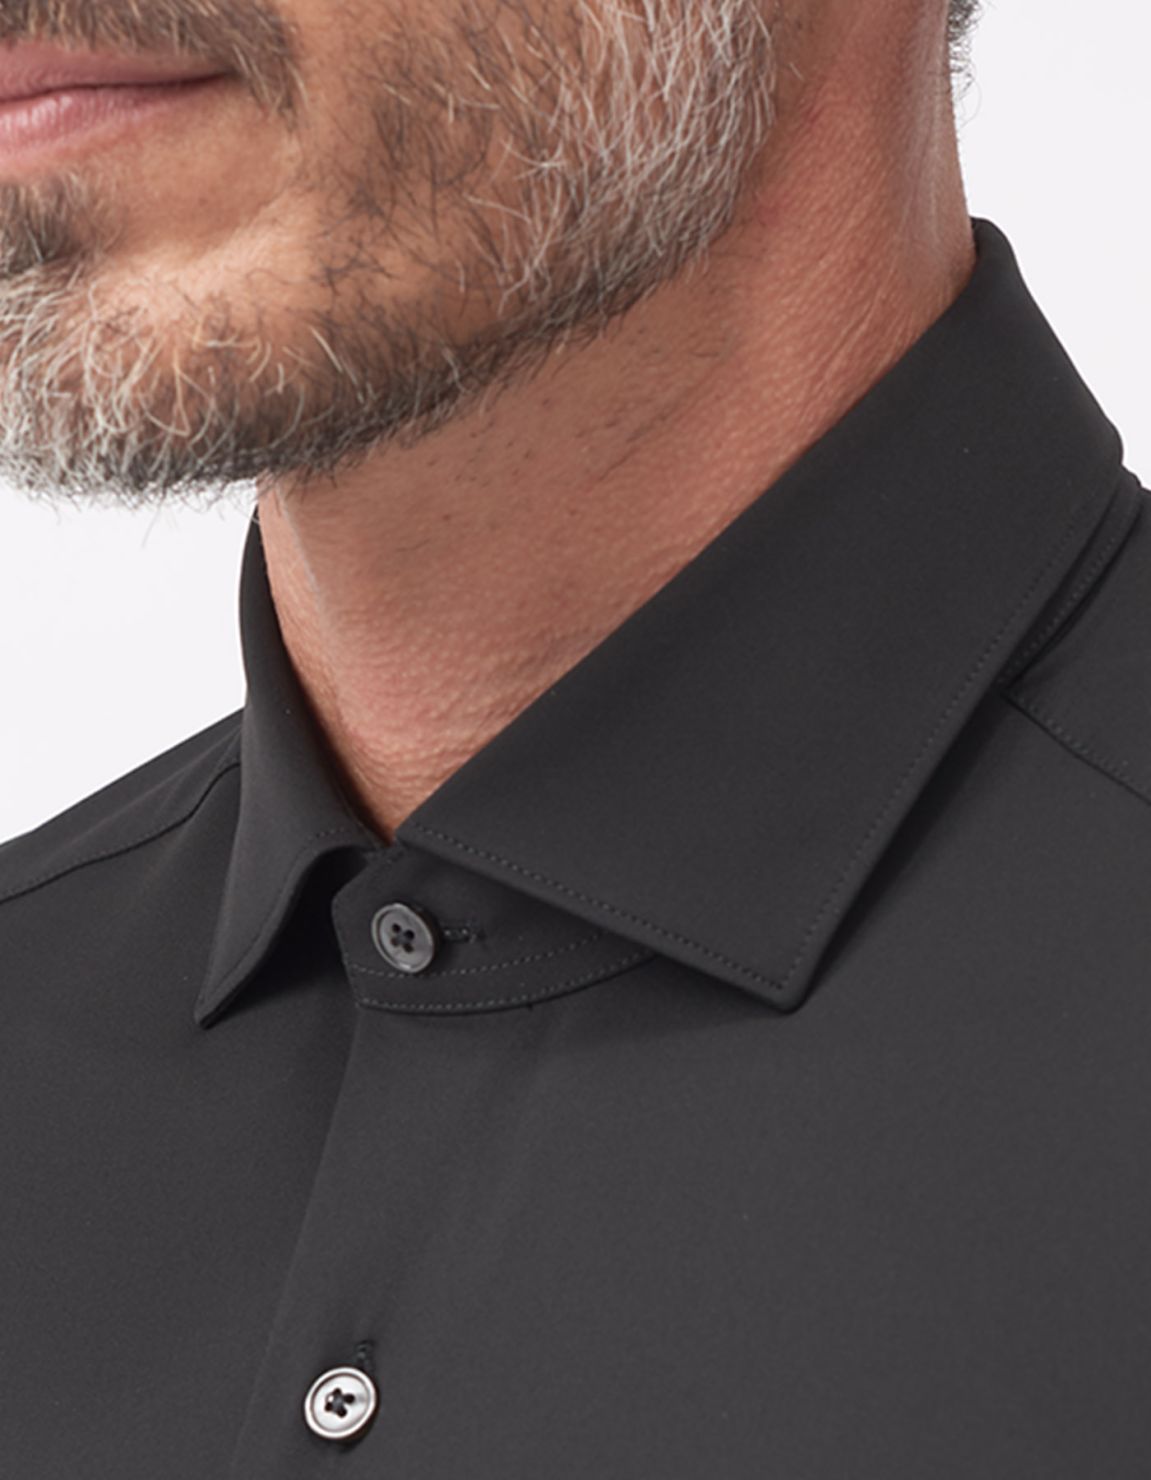 Shirt Collar small cutaway Black Twill Tailor Custom Fit 3